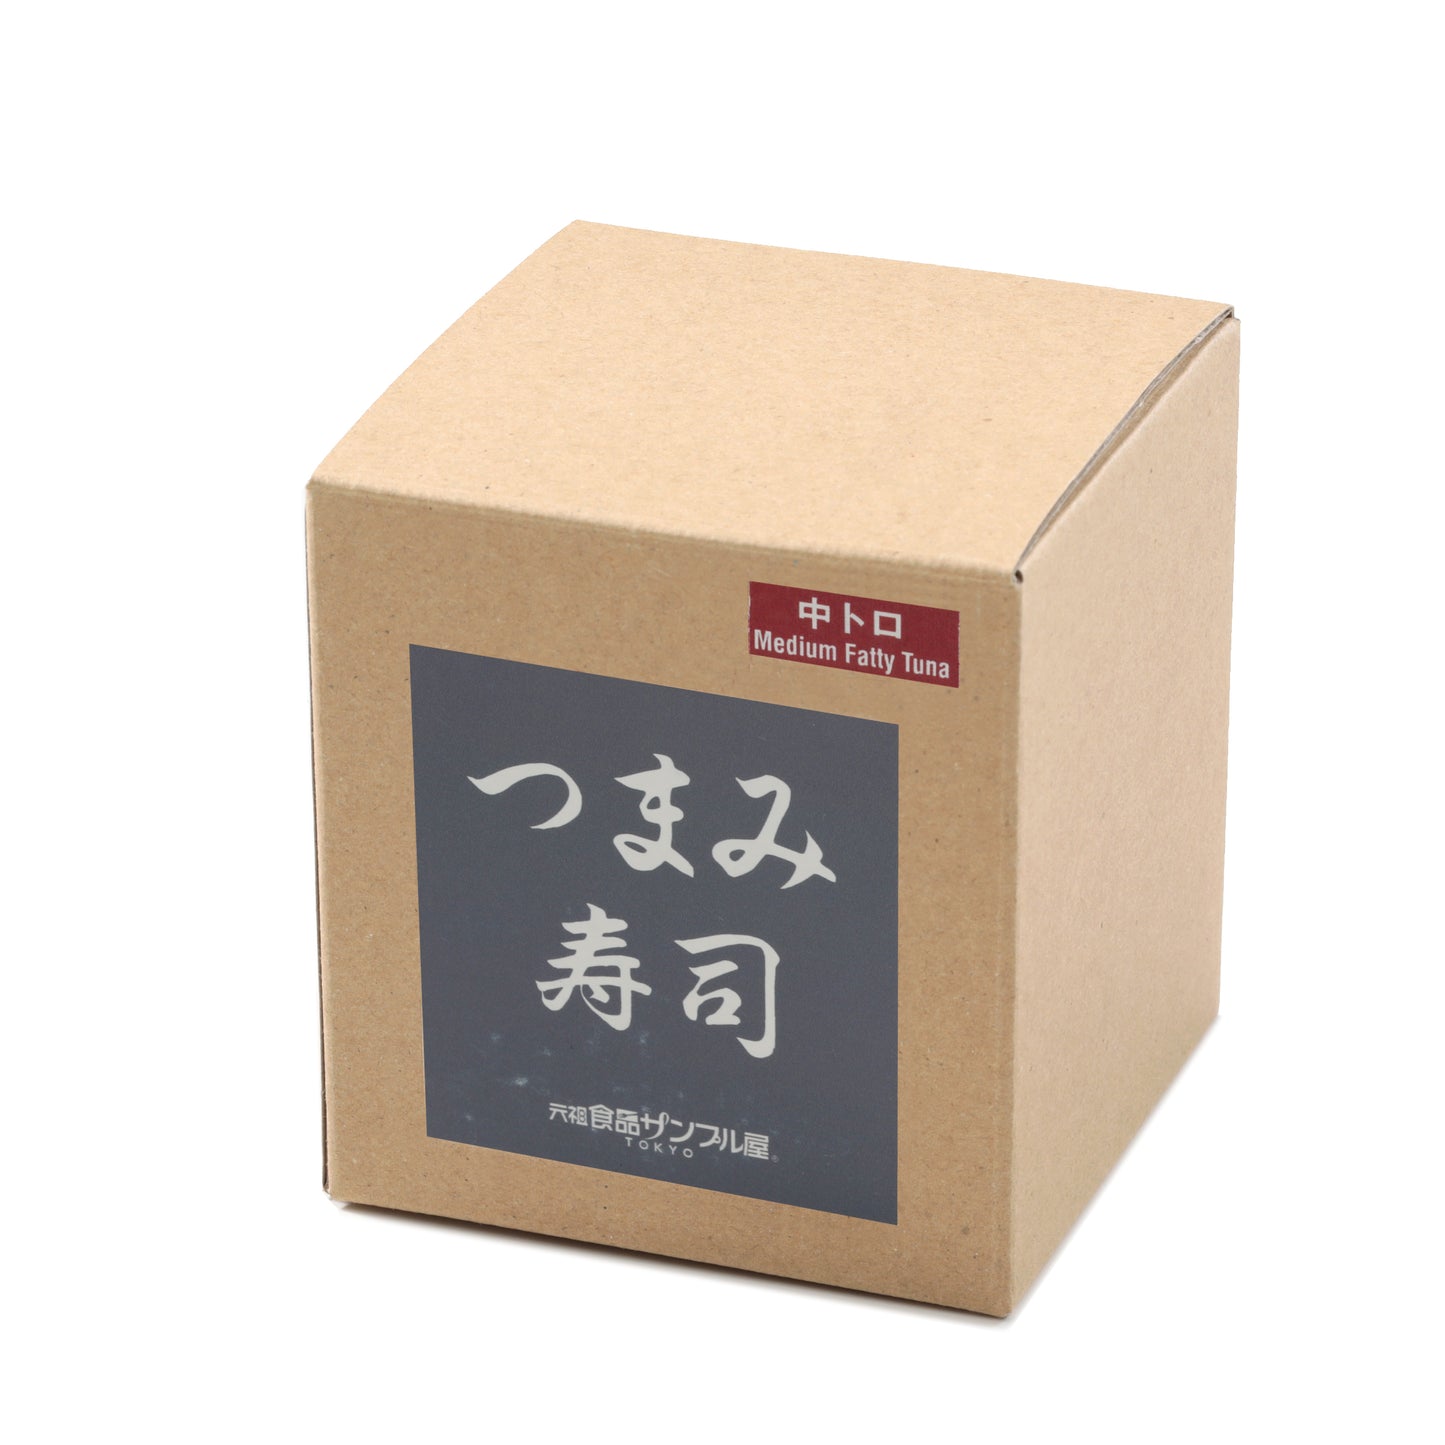 これは元祖食品サンプル屋の「つまみ寿司 中トロ」の商品パッケージ画像です。